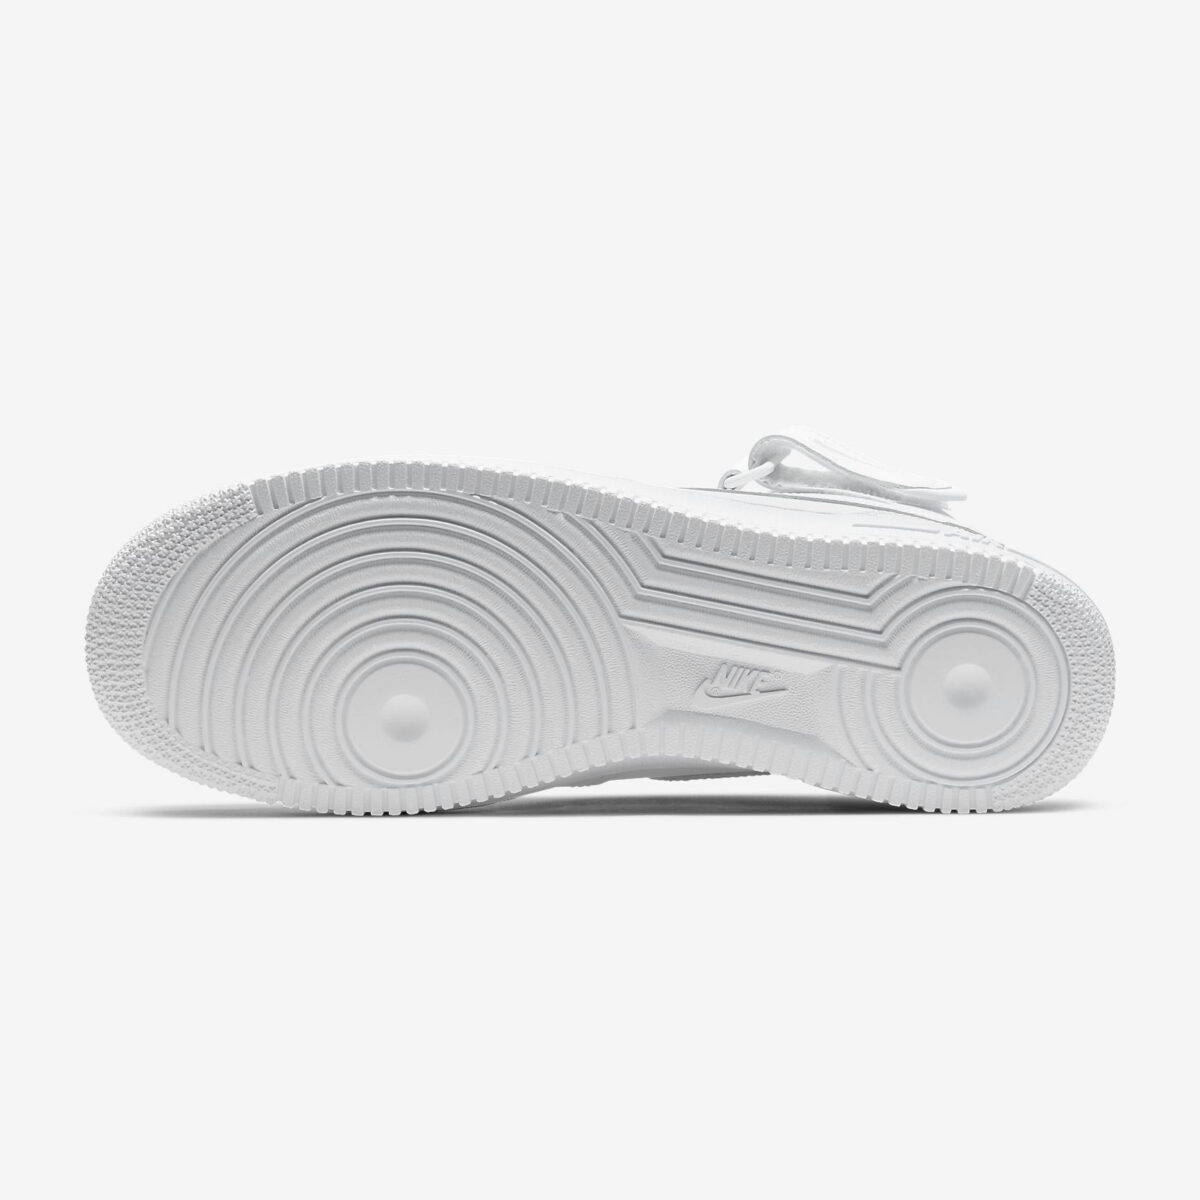 Herren Schuhe Nike Air Force 1 07 Mid weiß einkaufen